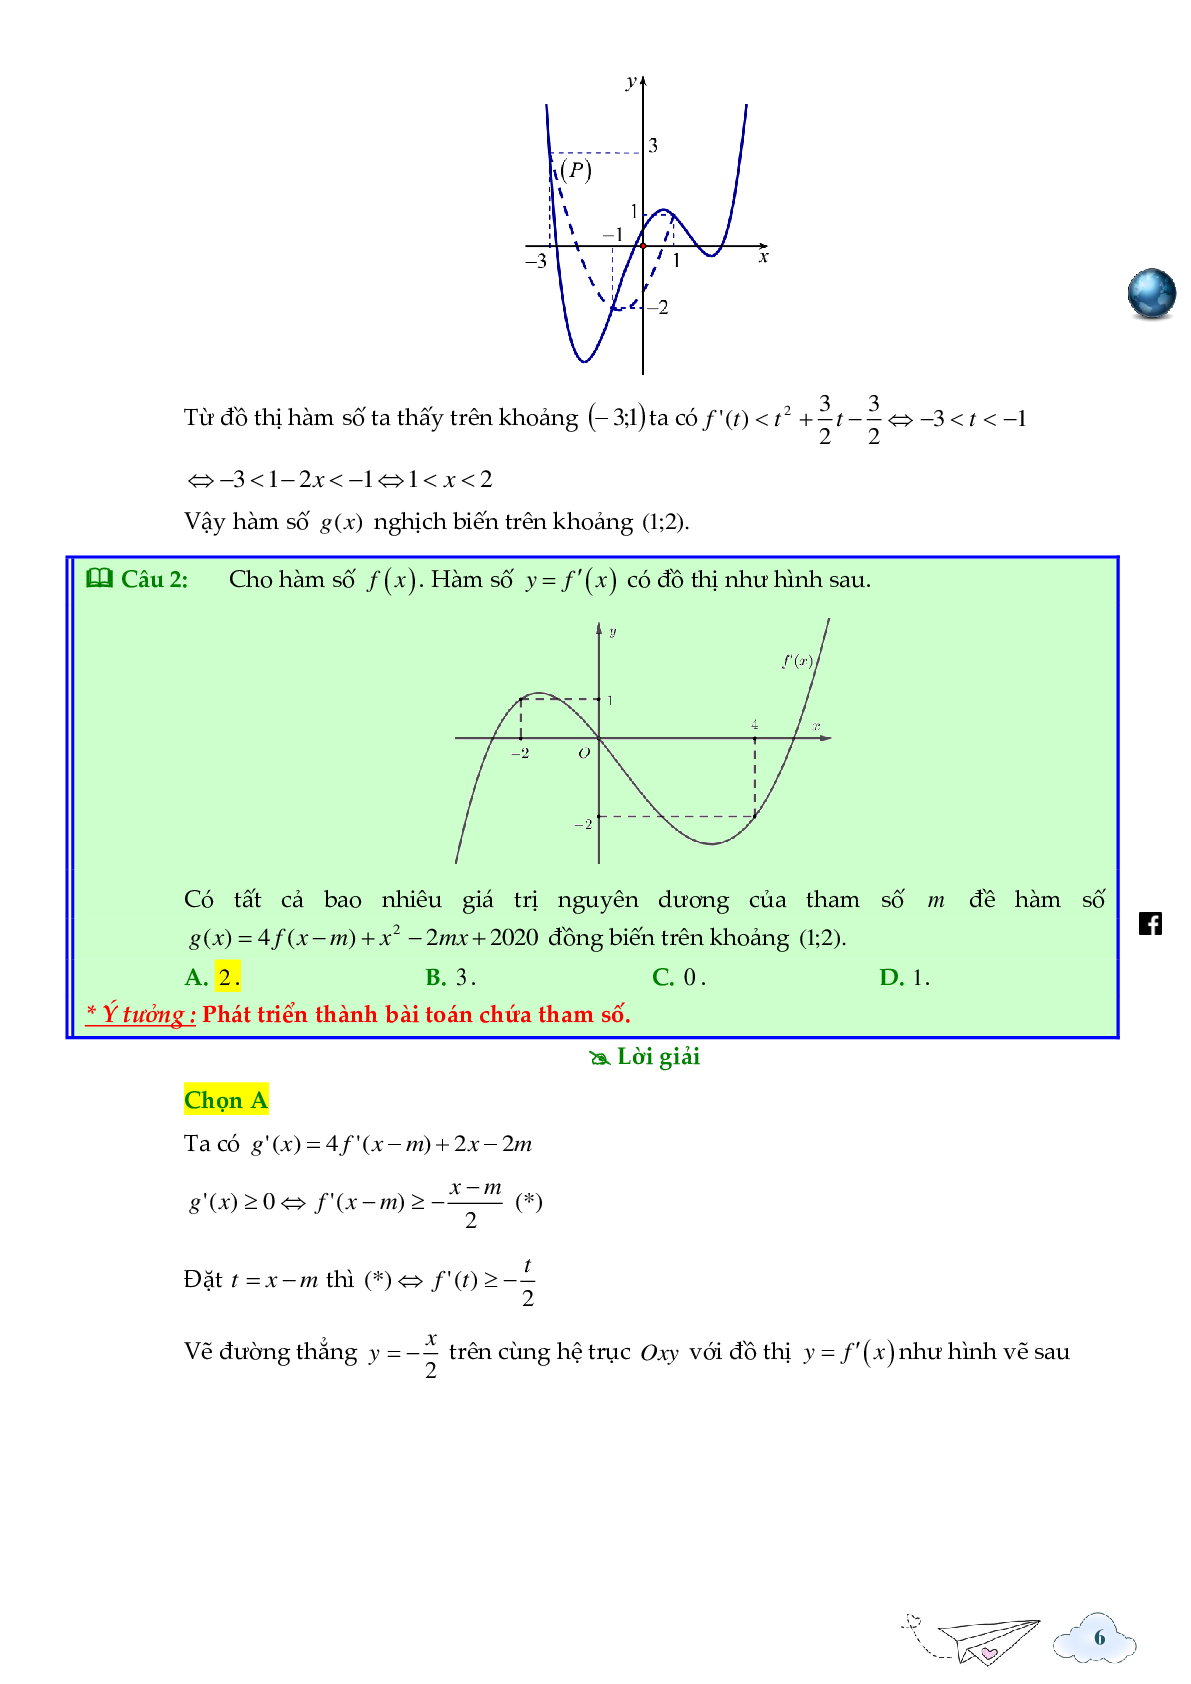 Tính đơn điệu của hàm ẩn được cho bởi đồ thị hàm f'(x) (trang 6)